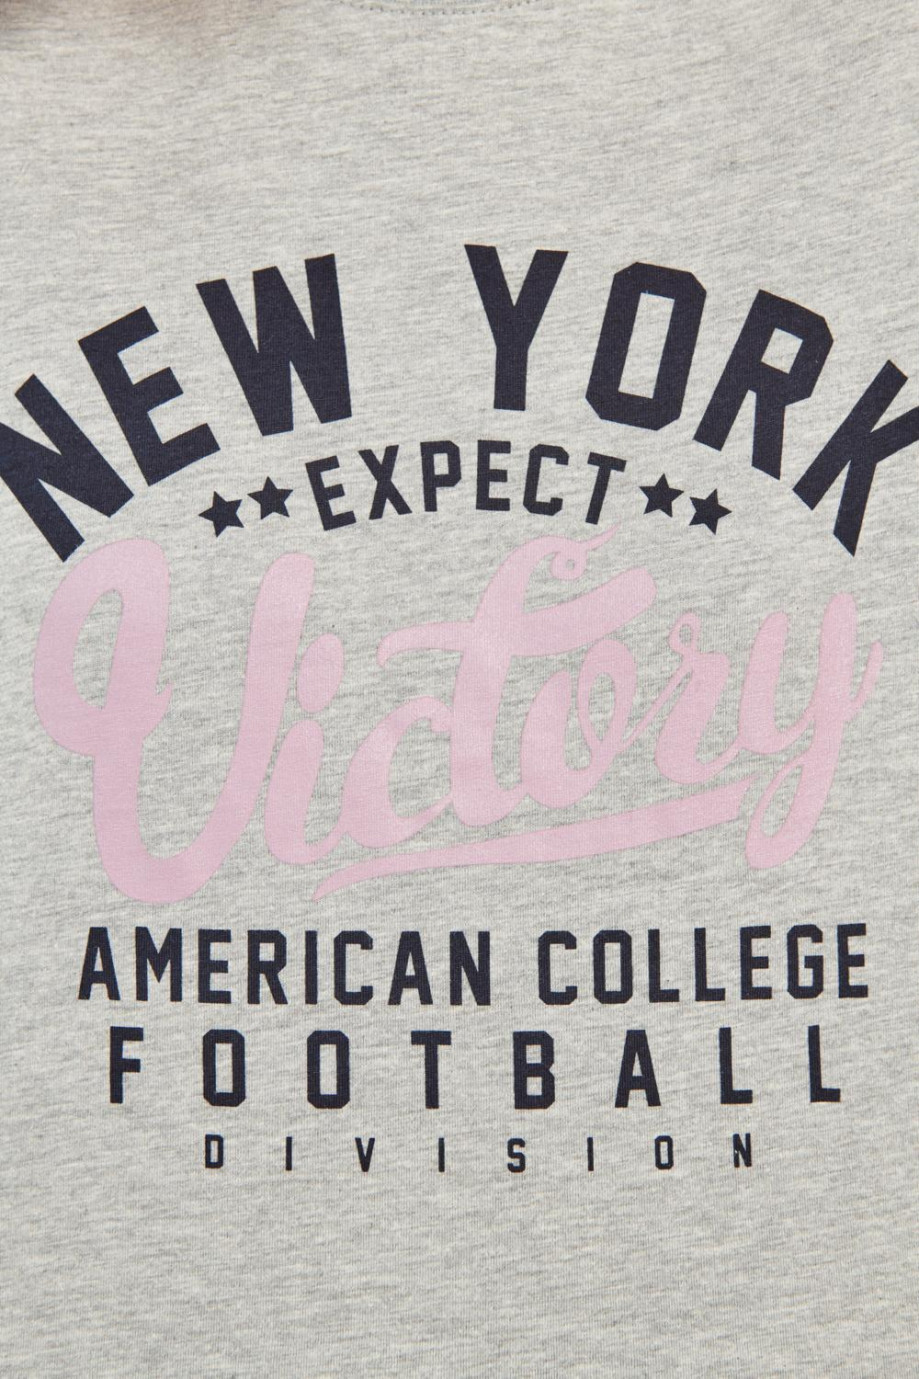 Camiseta gris clara con diseño college de New York y manga corta